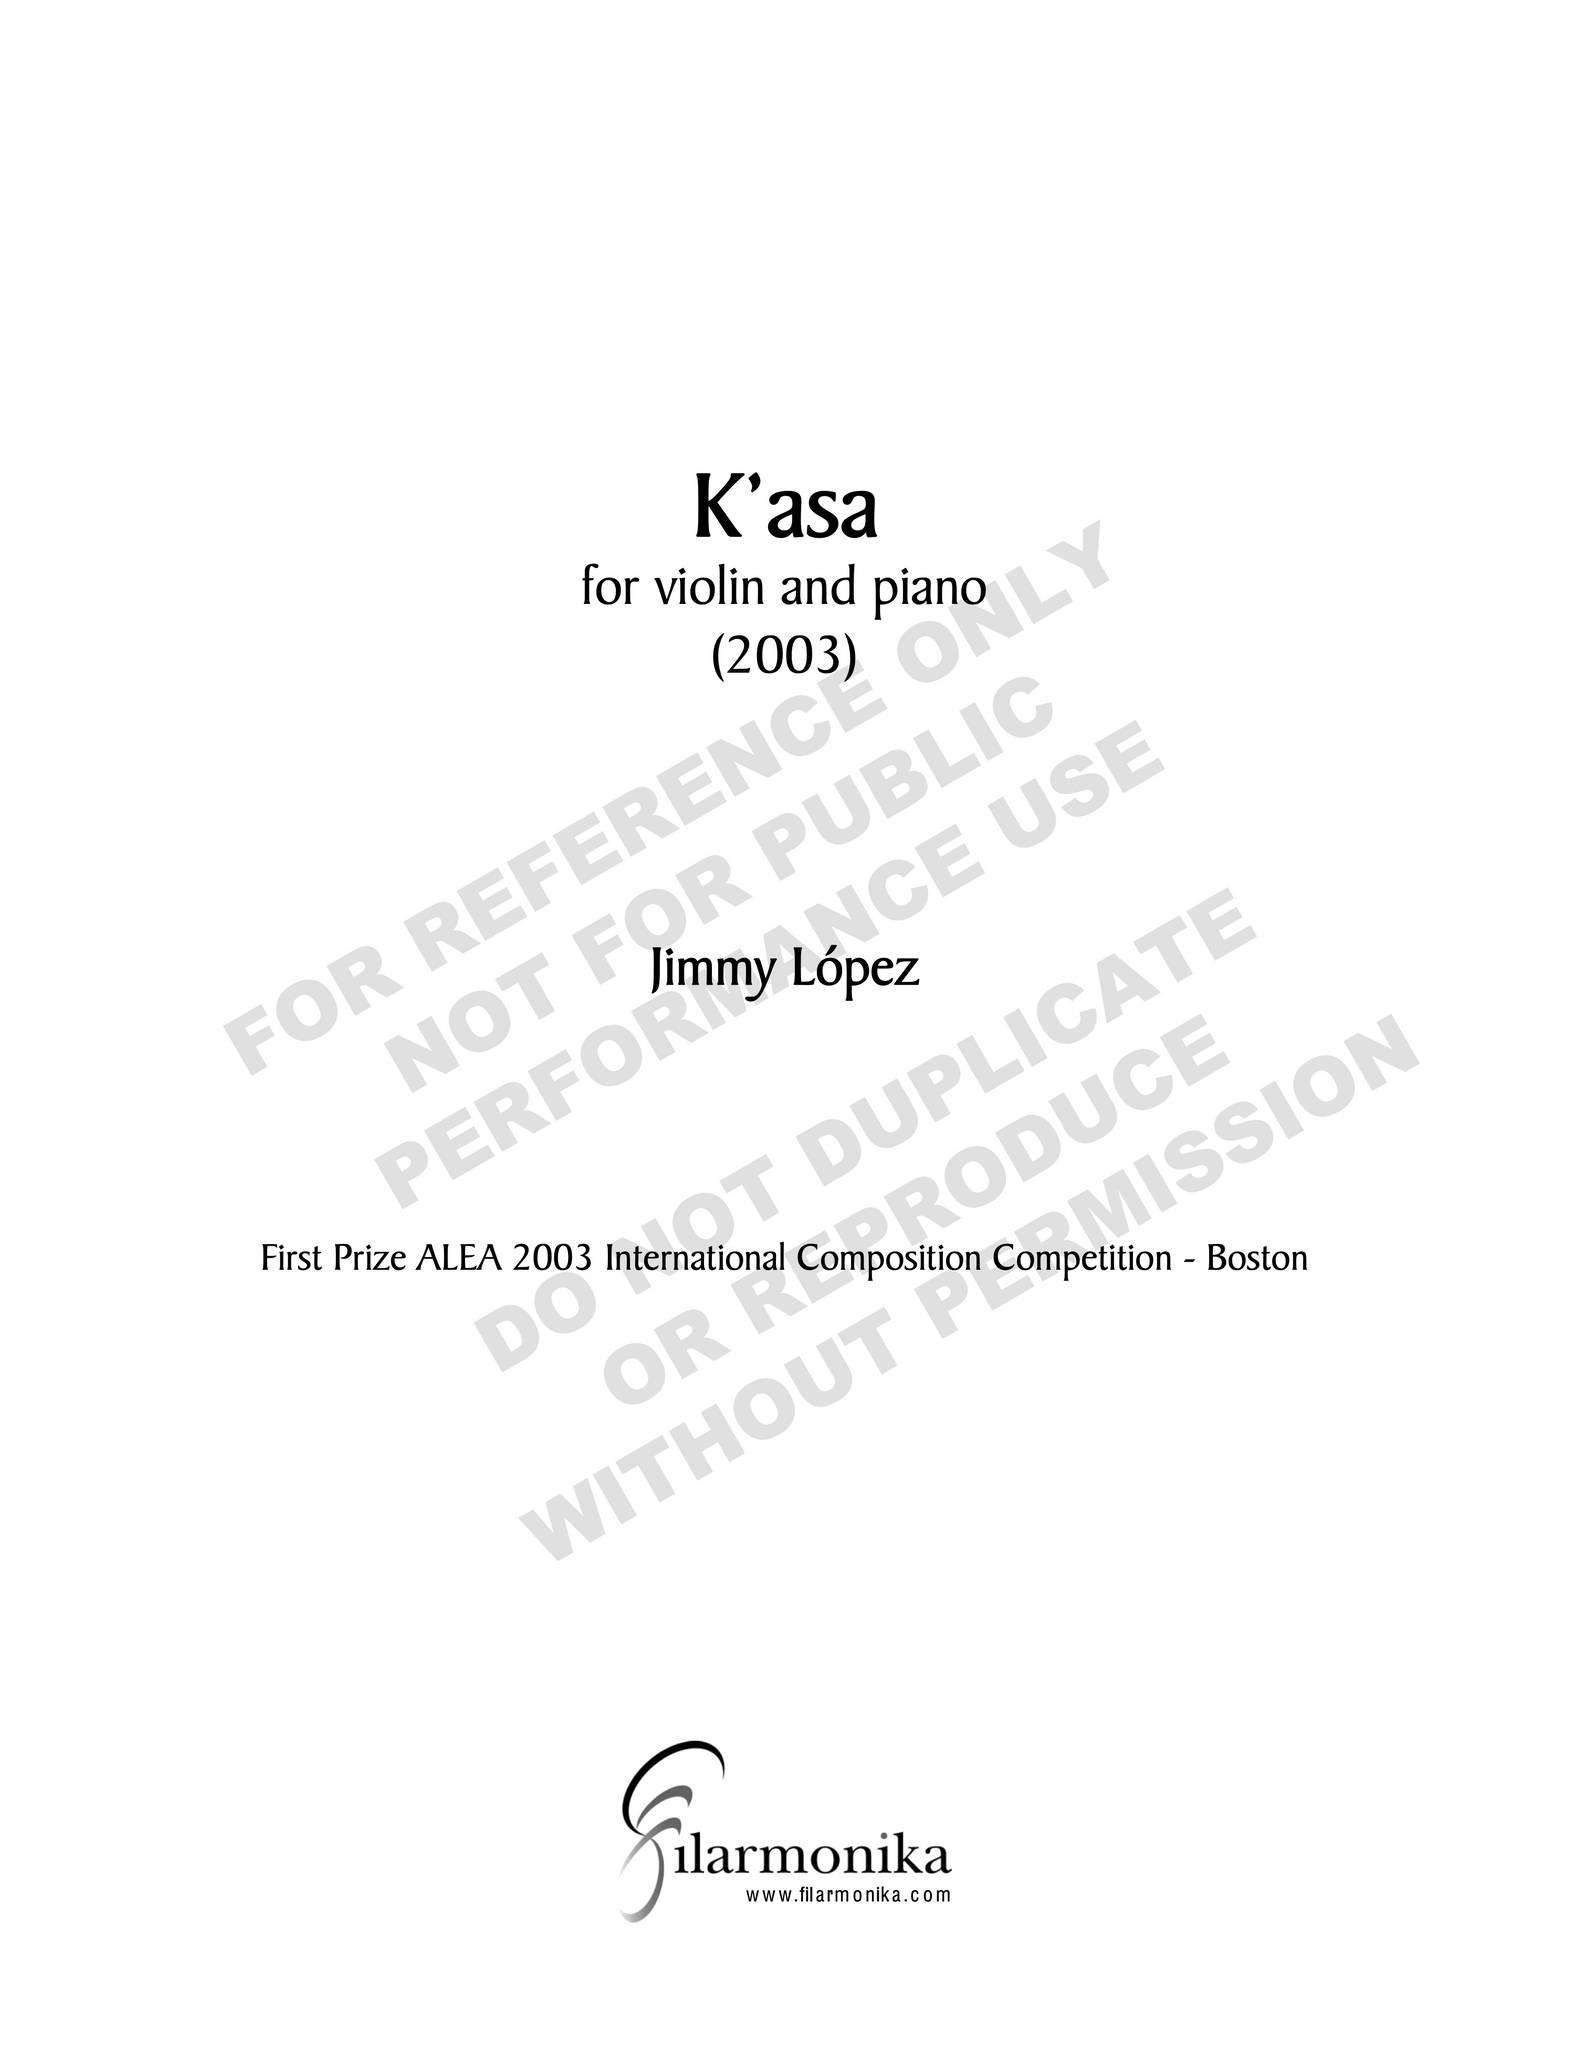 K'asa, for violin and piano